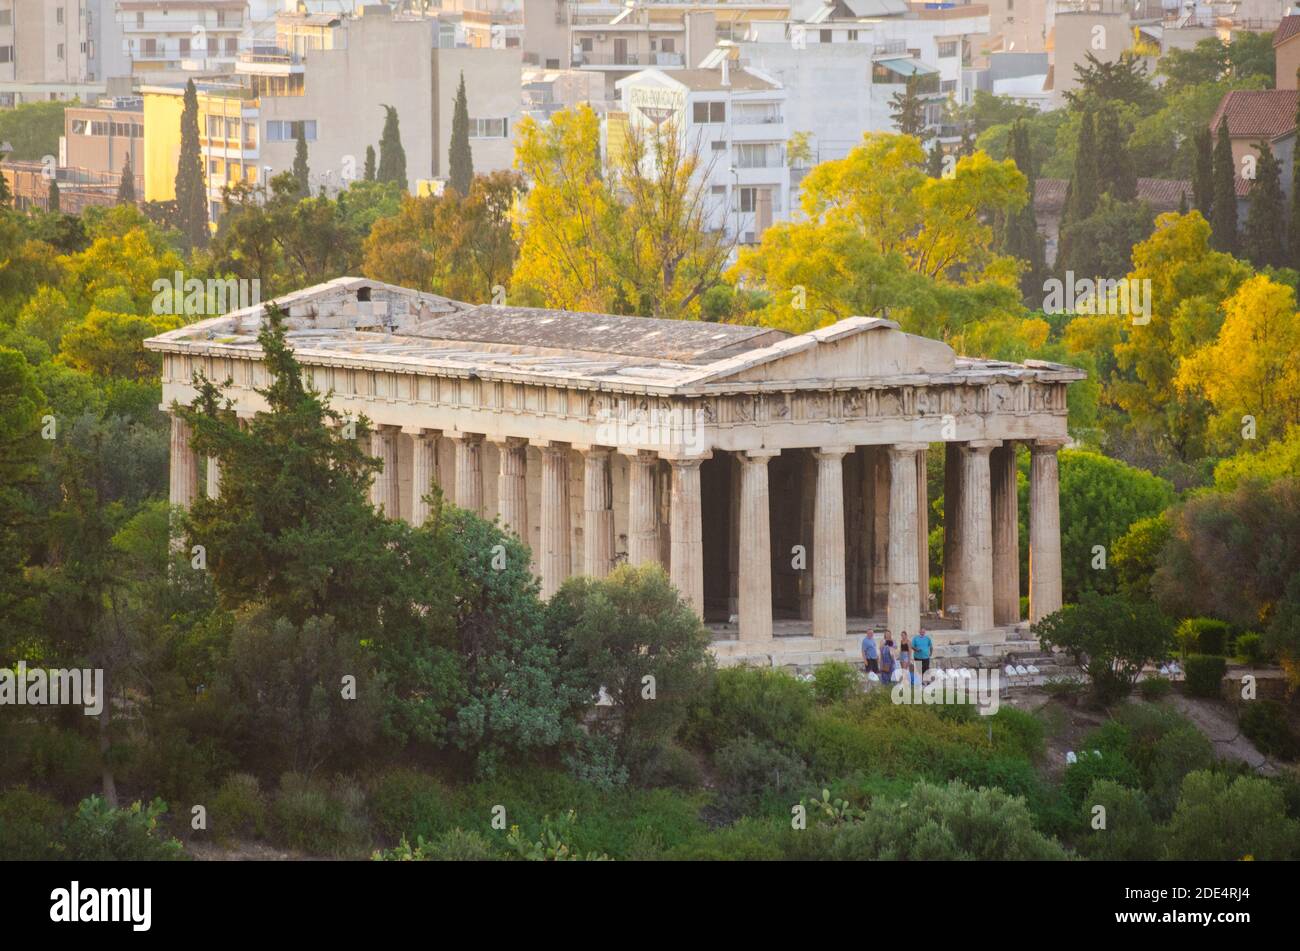 Le Temple d'Hephaistos - également connu sous le nom de Theseion - dans l'ancienne Agora de Thessio Athènes Grèce - photo: Geopix Banque D'Images